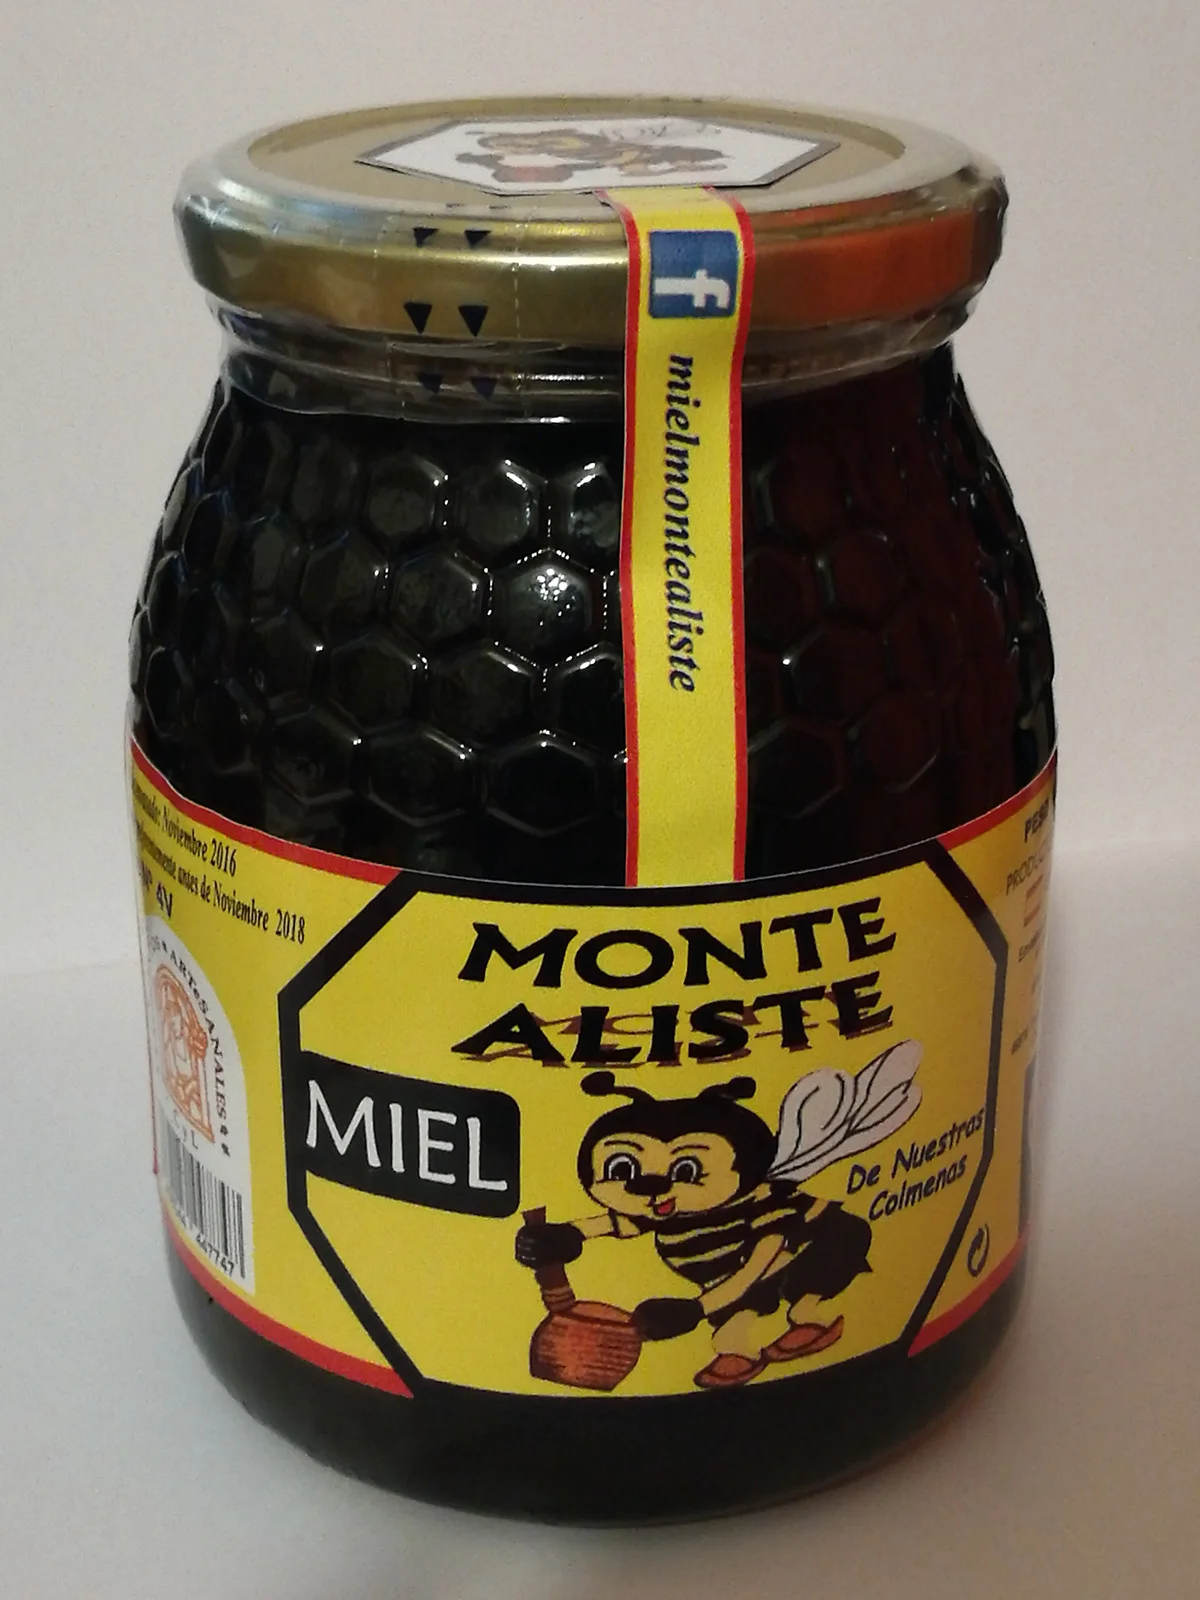 Miel Monte Aliste tarro.webp